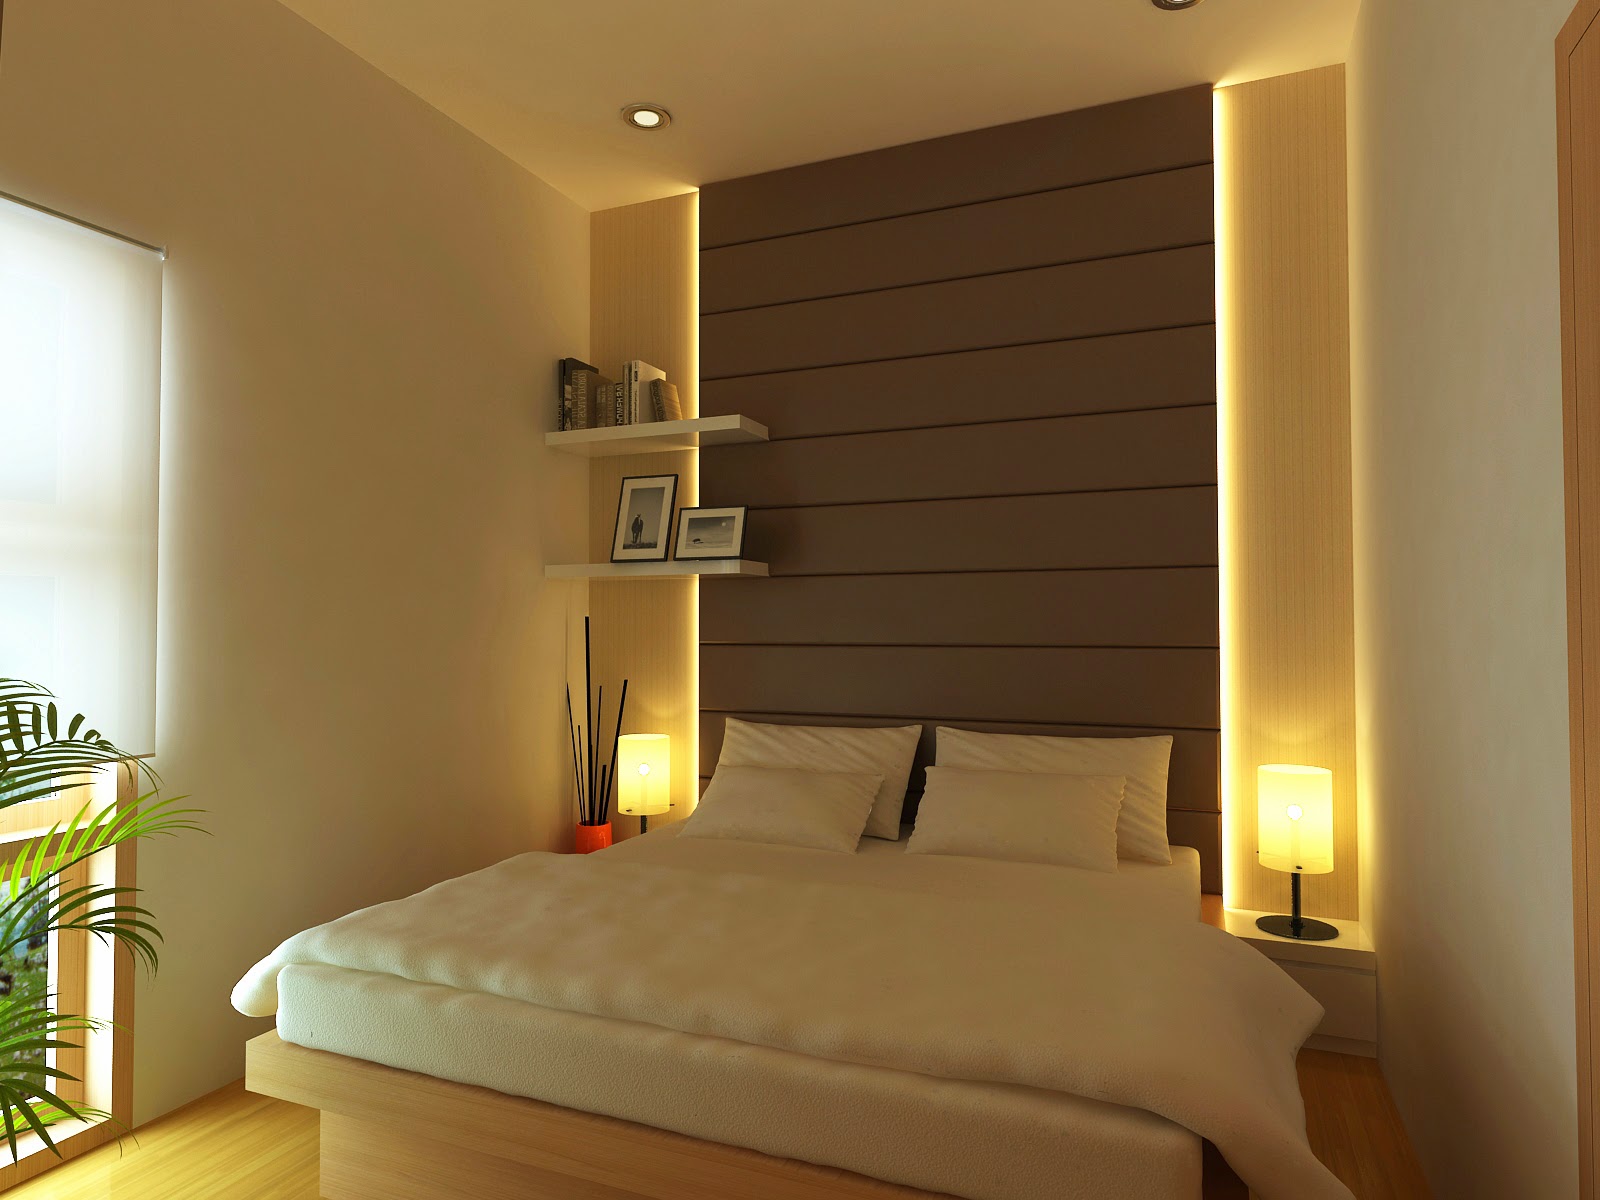 gambar kamar  tidur  rumah minimalis 2014 lensarumah kamar  